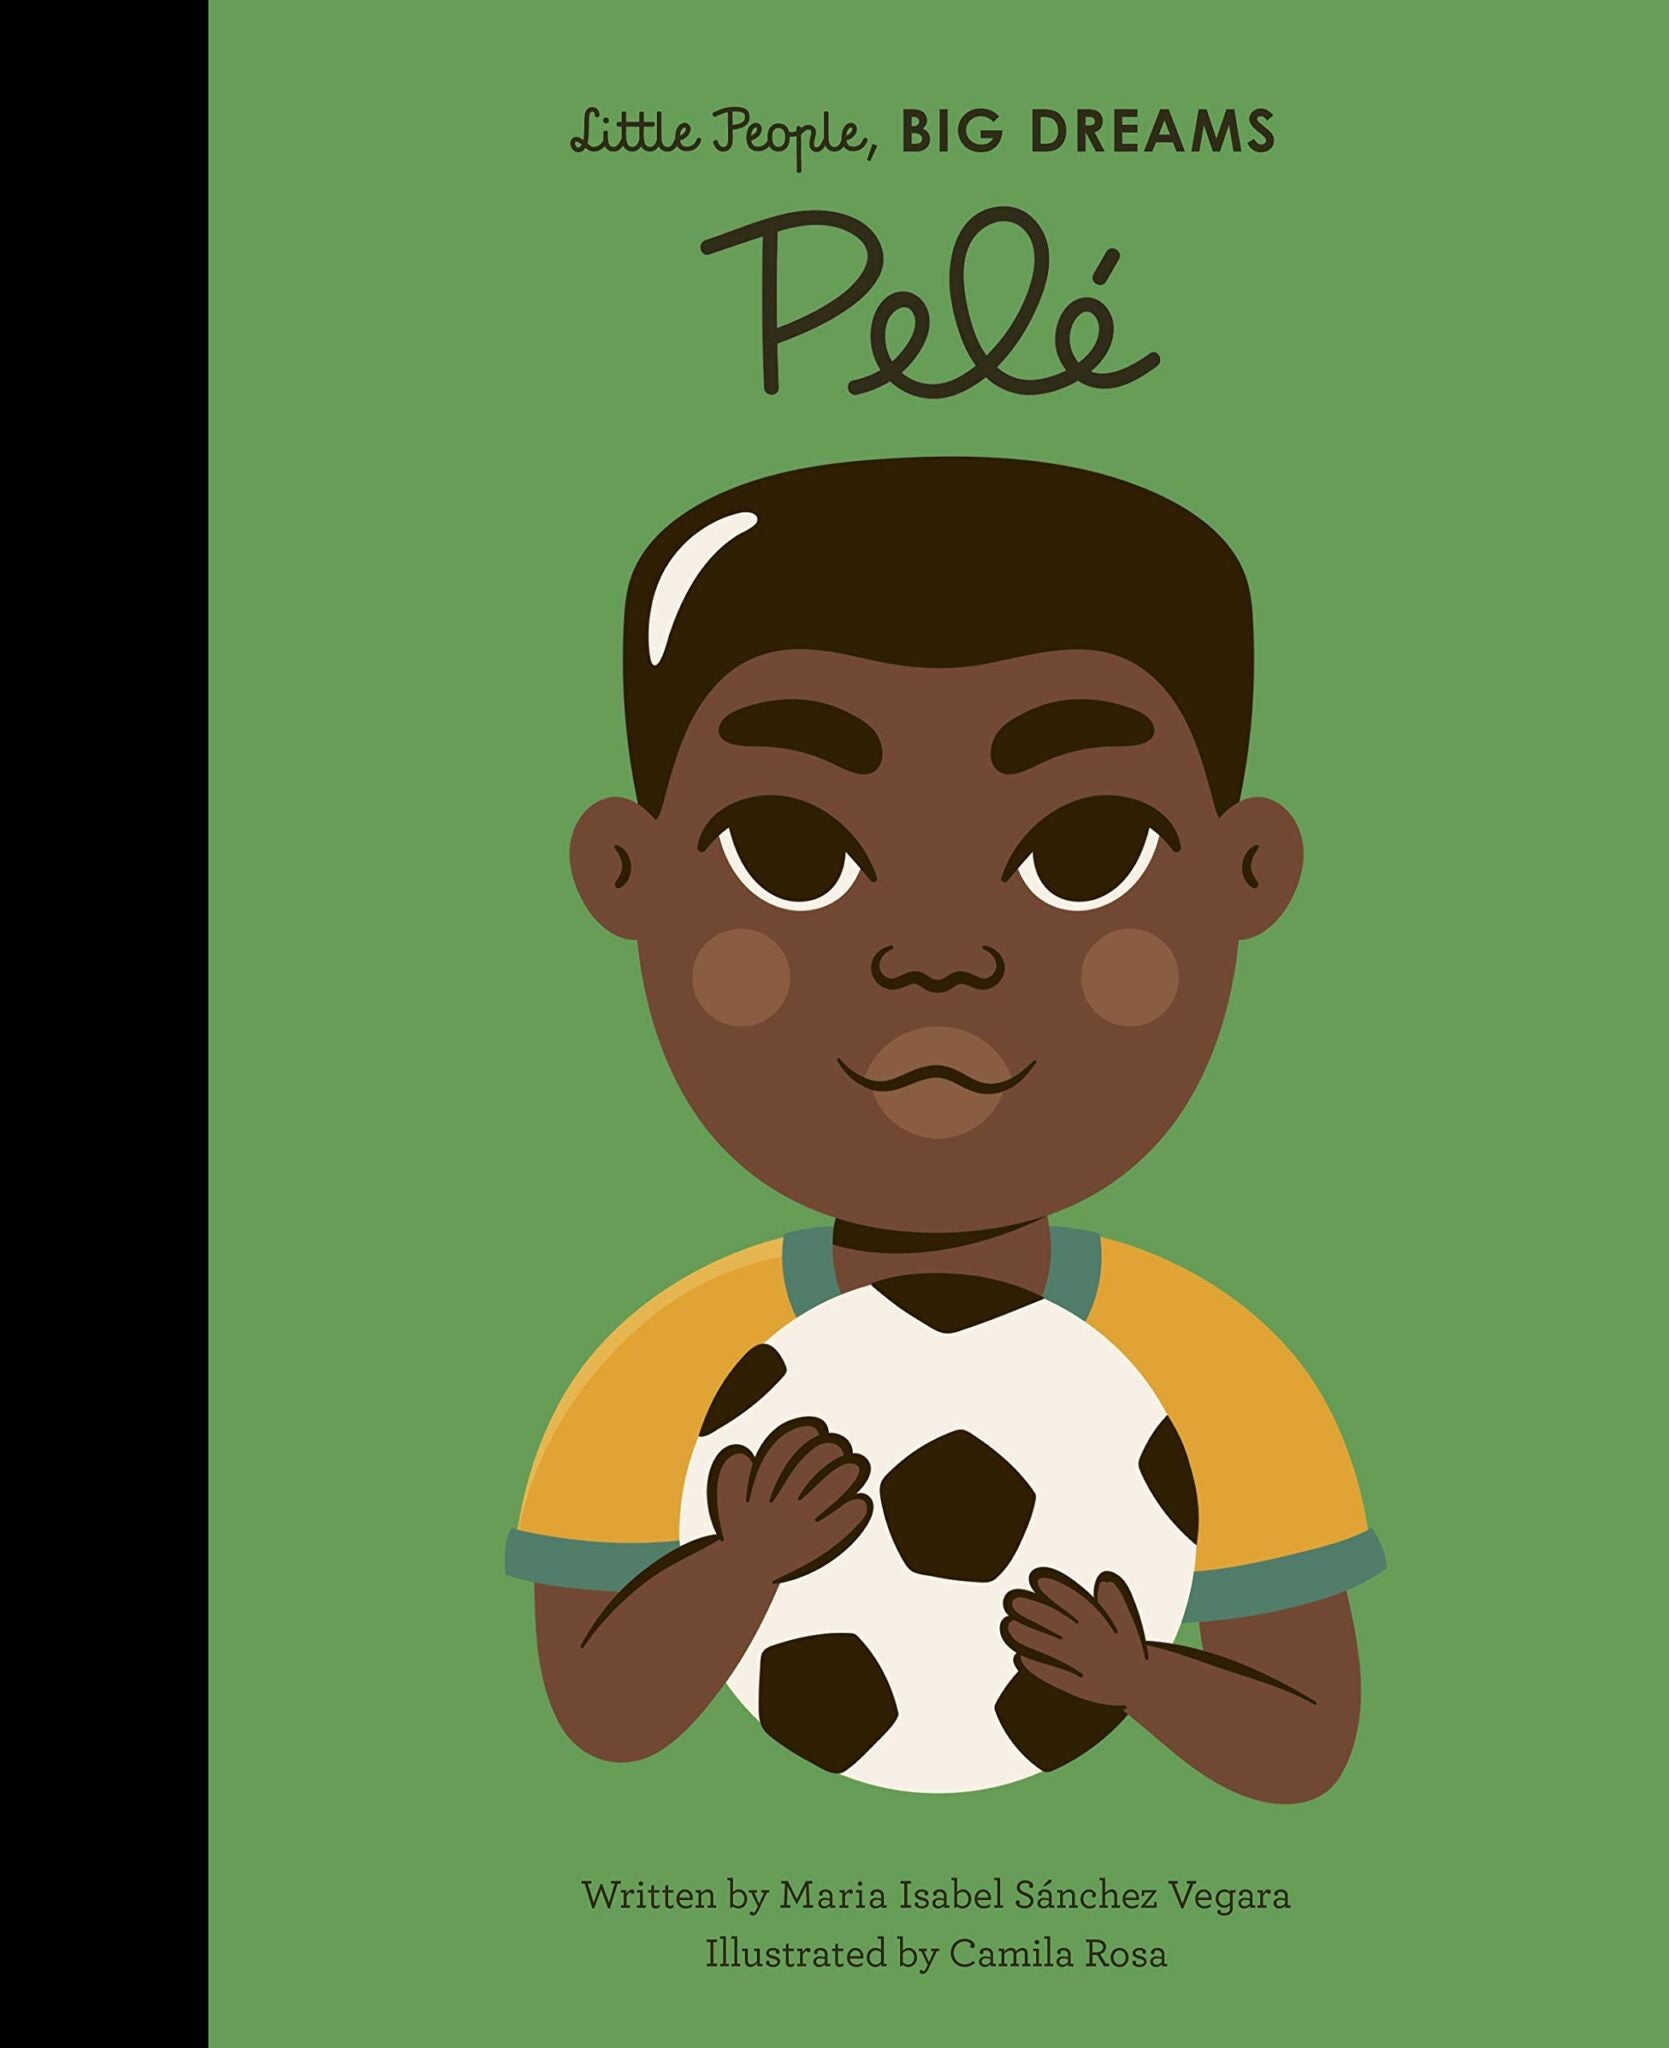 Little People, Big Dreams - Pelé